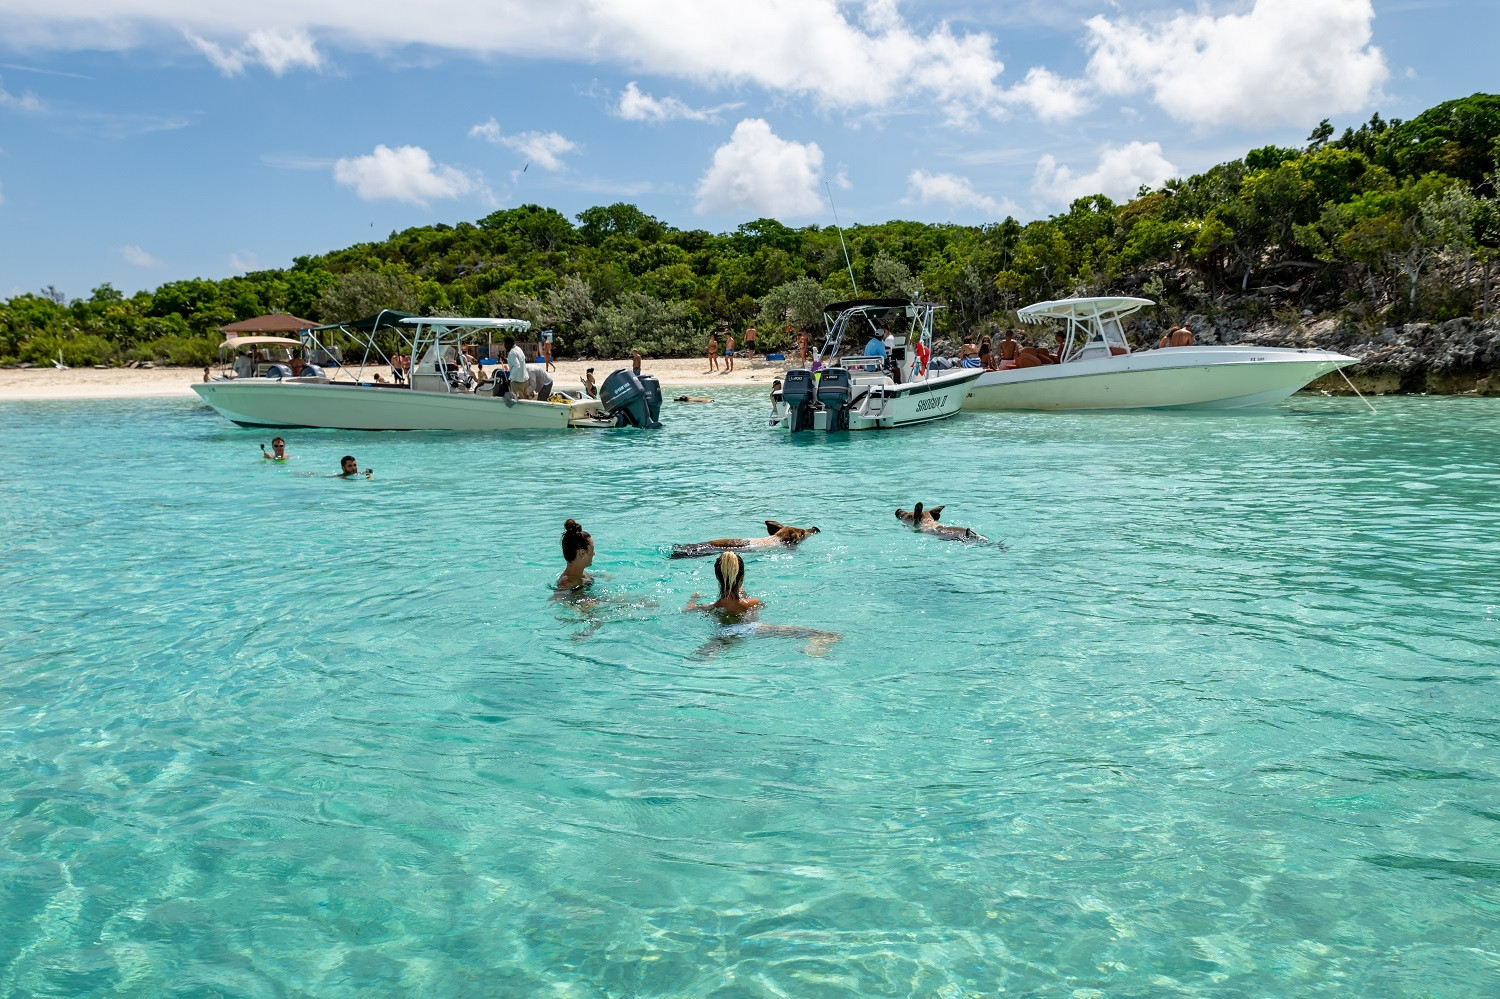 Hòn đảo nơi lợn biết bơi và xin ăn. Ảnh: Giongi63/Shutterstock.